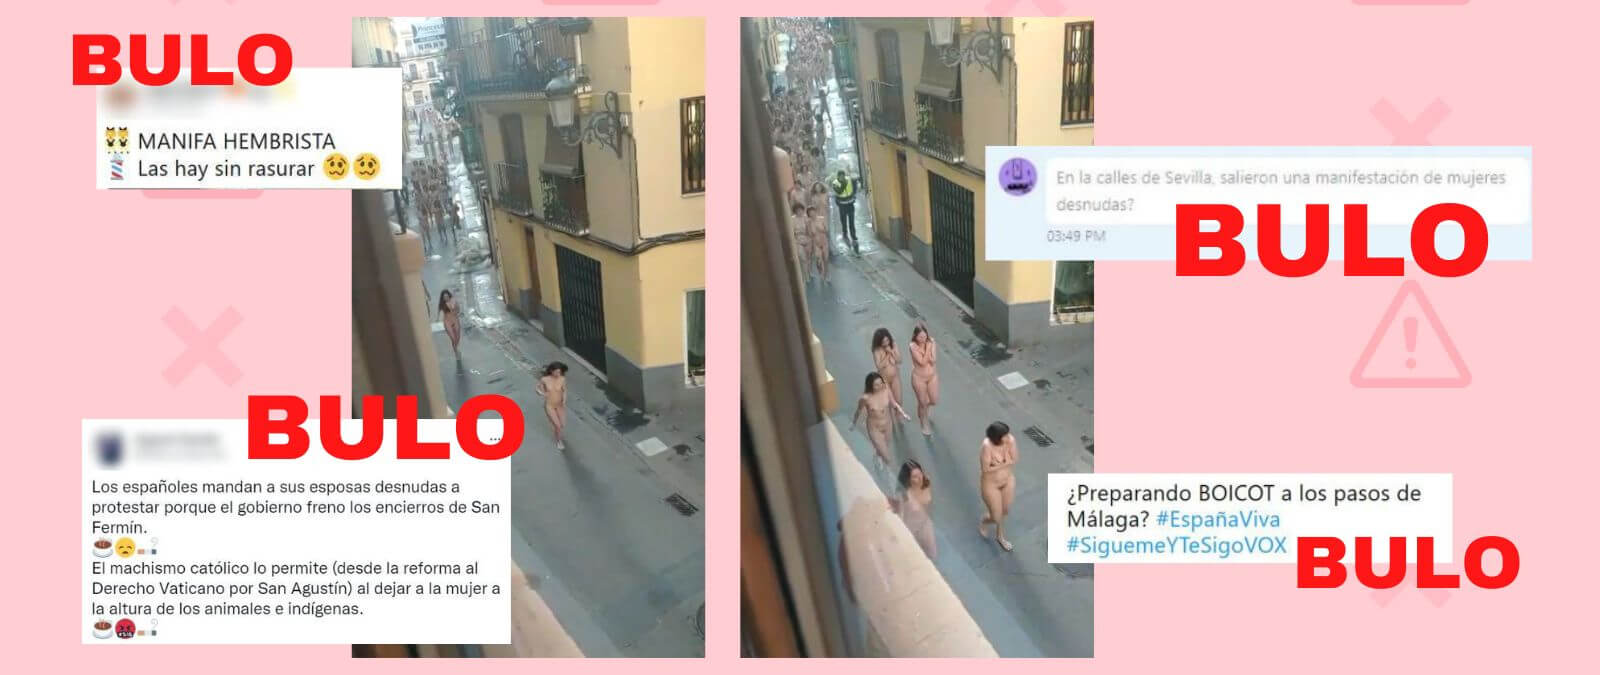 El vídeo de una acción artística en Valencia con mujeres desnudas corriendo  que se utiliza frecuentemente para desinformar · Maldita.es - Periodismo  para que no te la cuelen